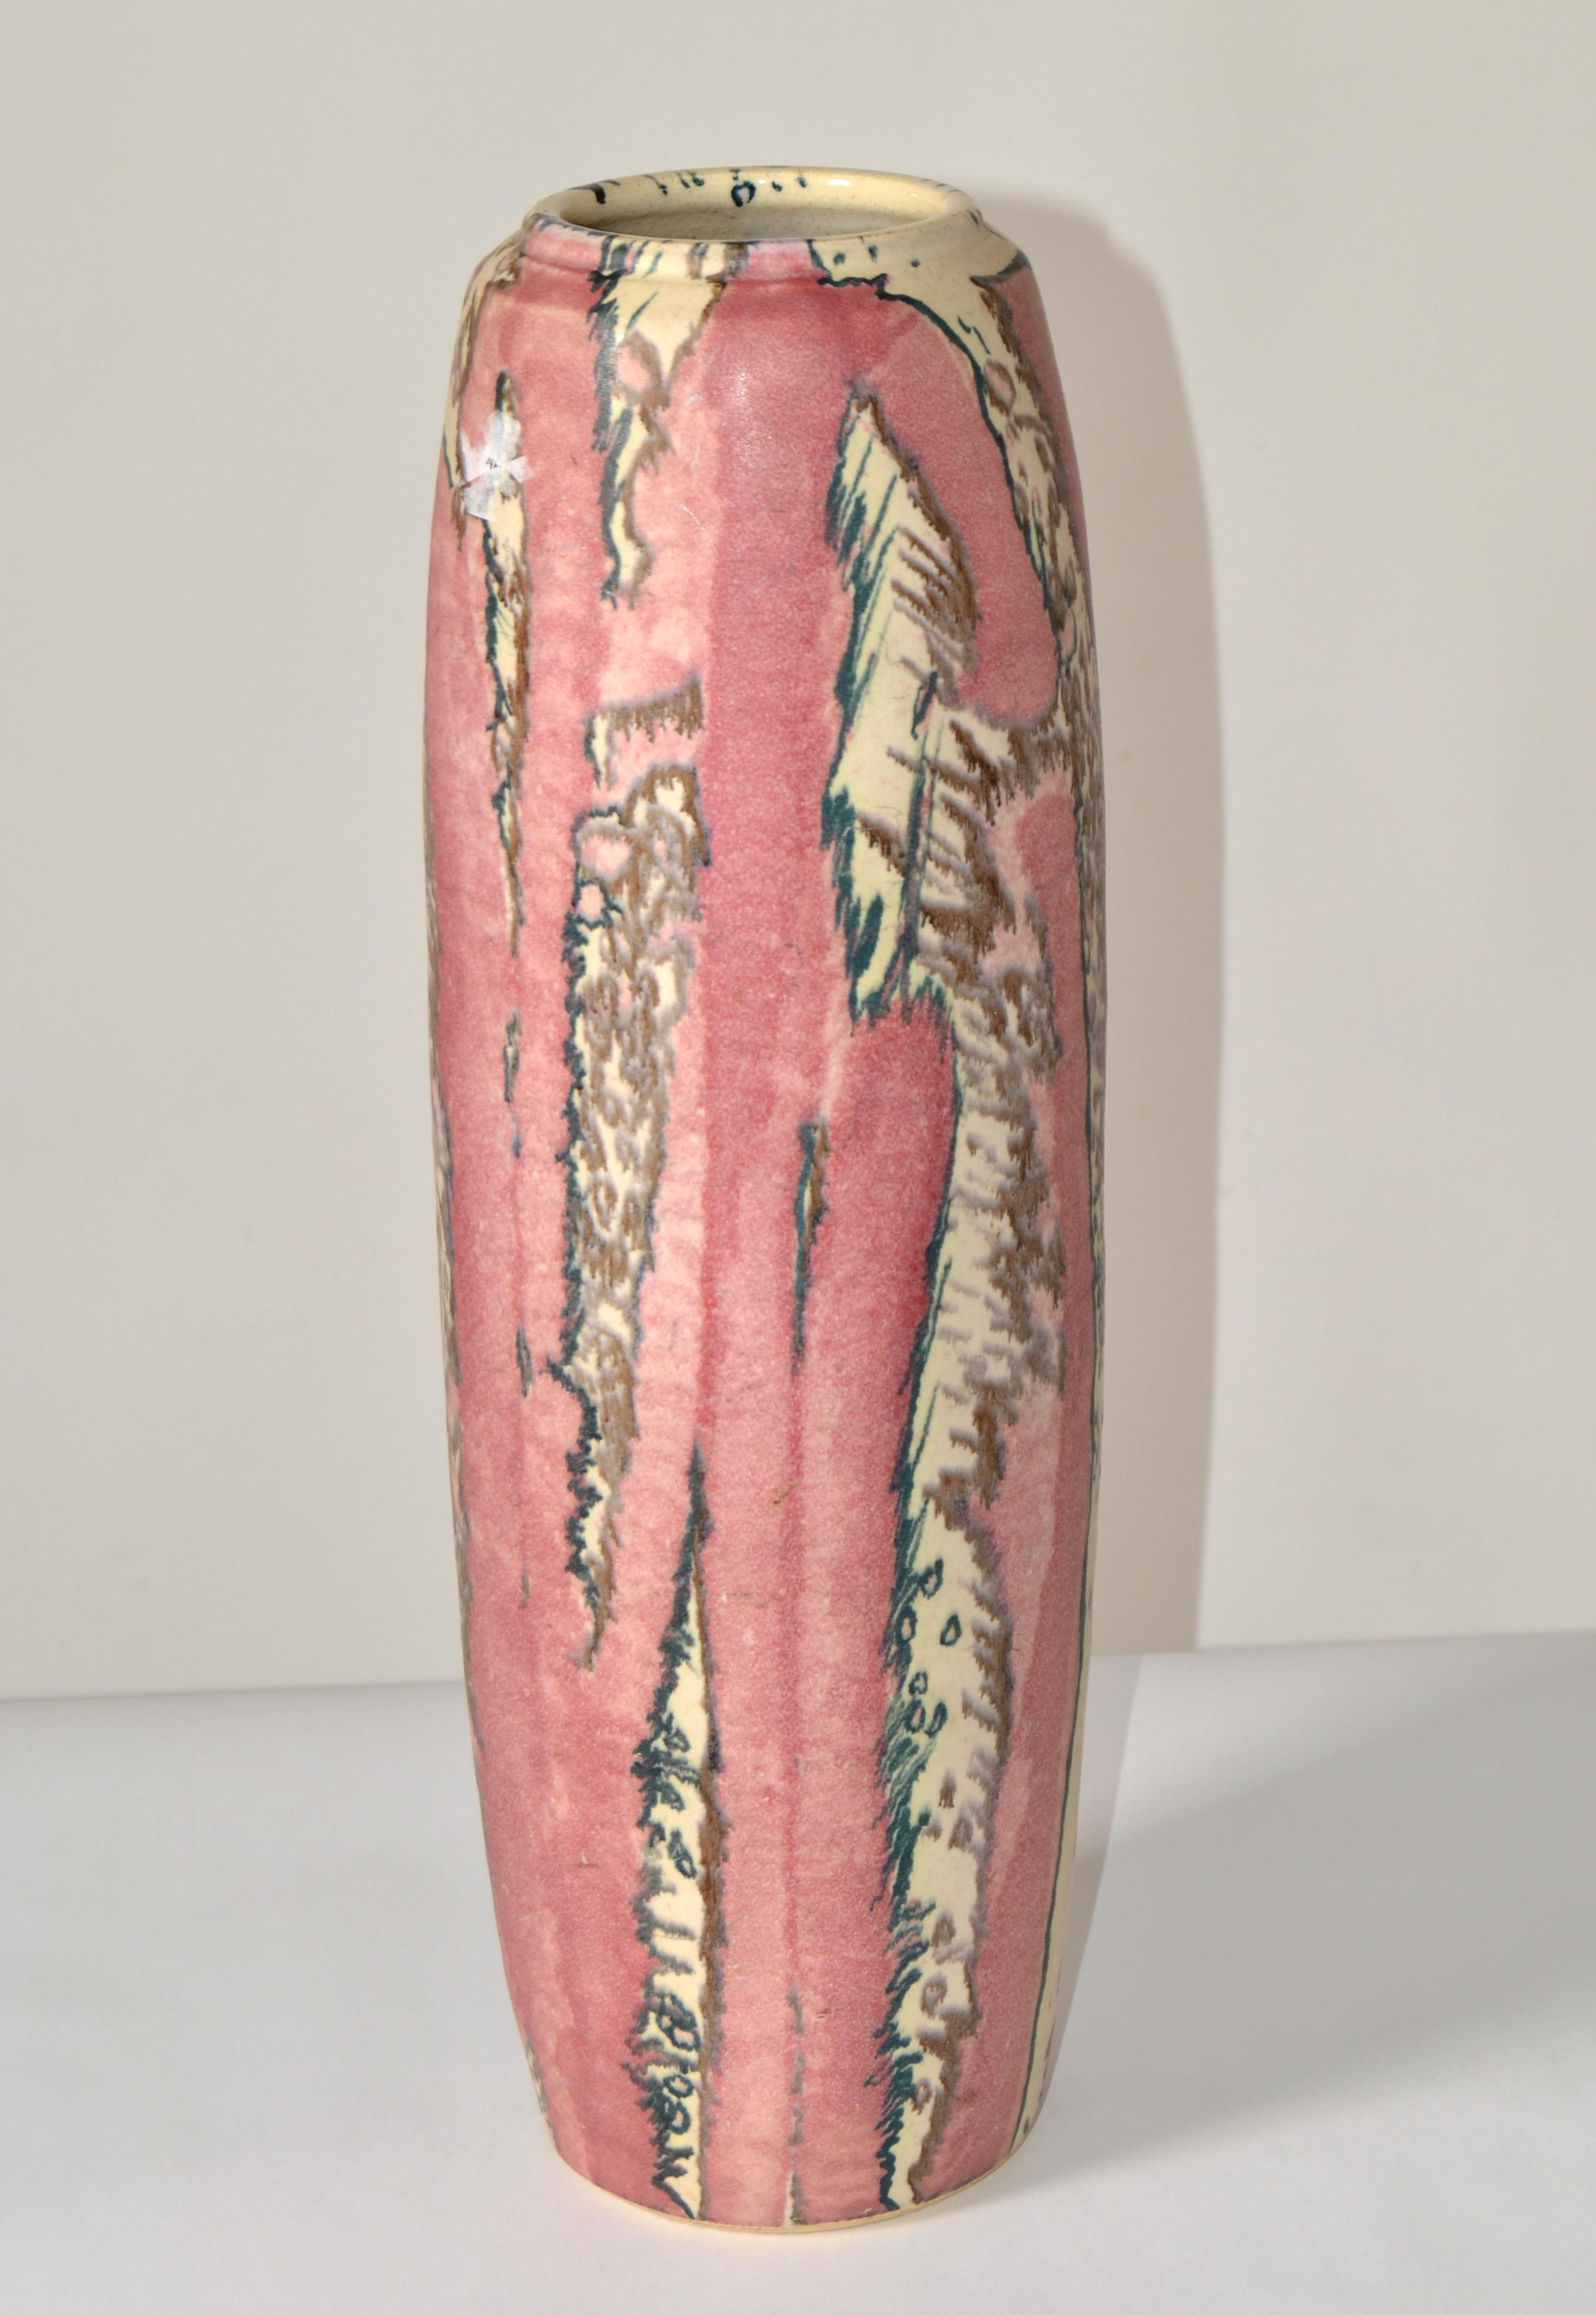 Signierte große Studio Piece Incised und glasierte Keramik-Vase in Rosa, Schiefergrau und Off-White Glasur.  
Modernes Kunsthandwerksdesign aus der Jahrhundertmitte mit bemerkenswerten Venen und Linien.  
Signiert von dem unbekannten Künstler.
Die